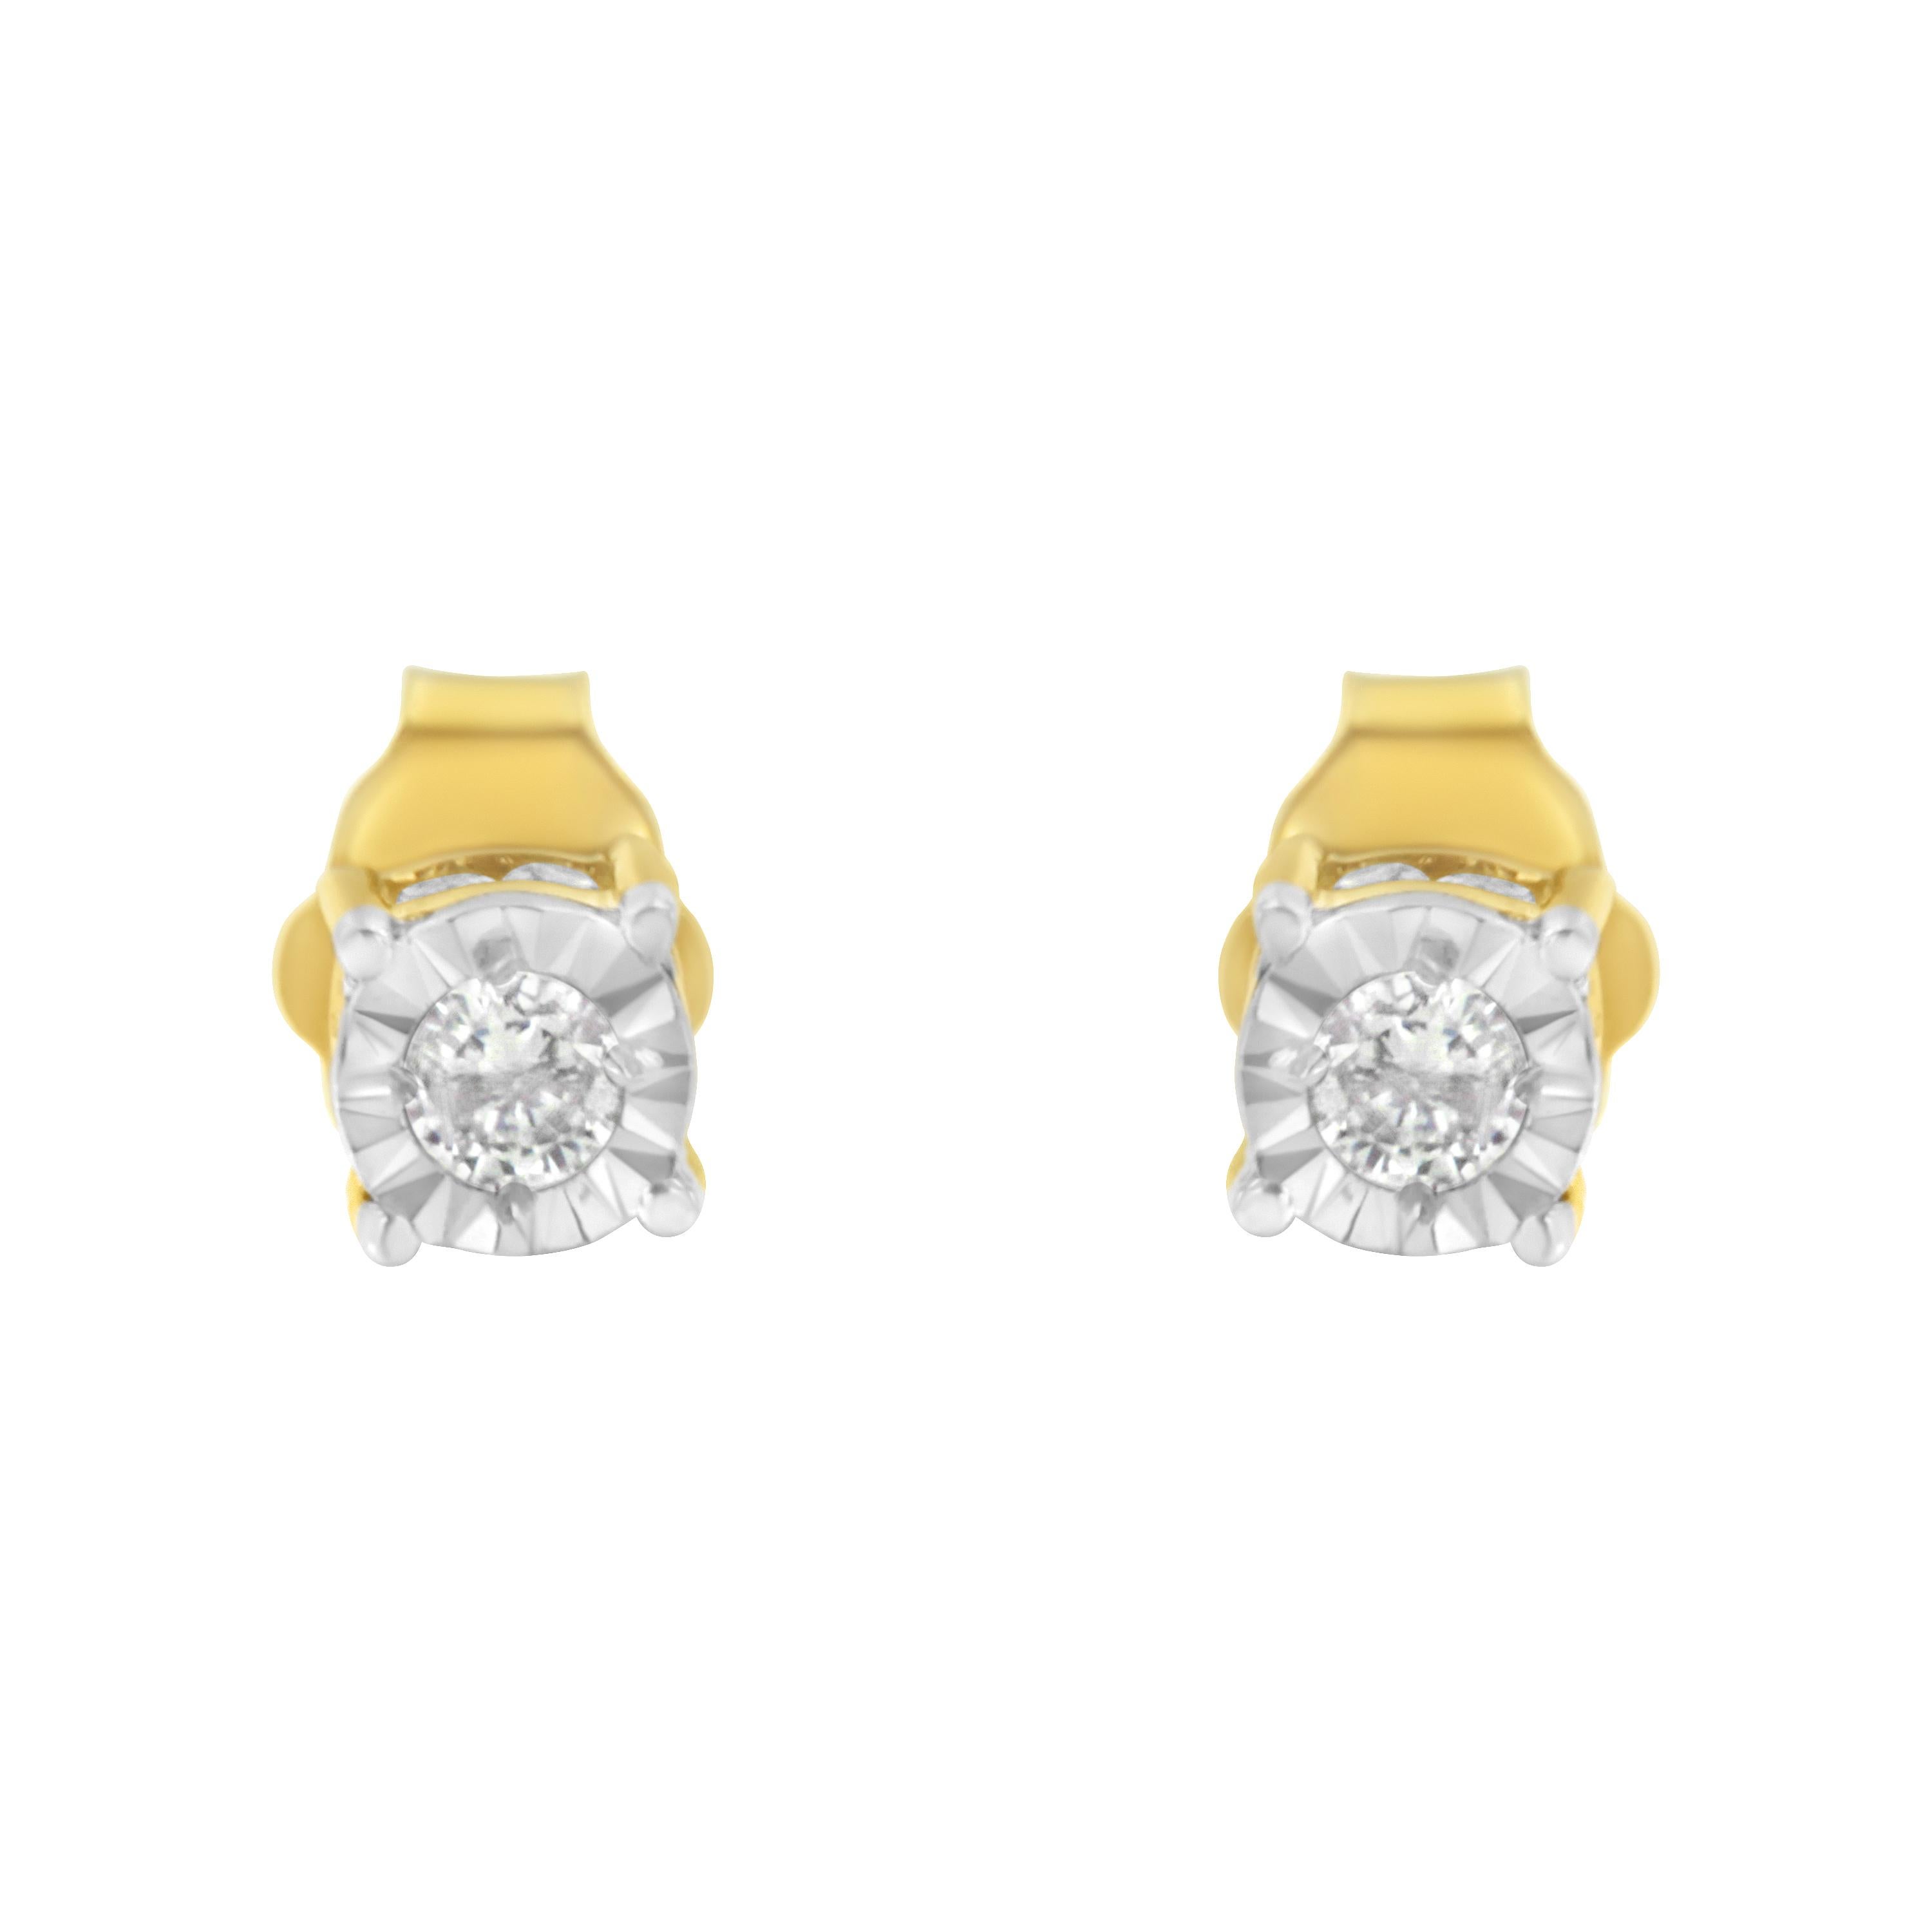 1 4 carat diamond stud earrings